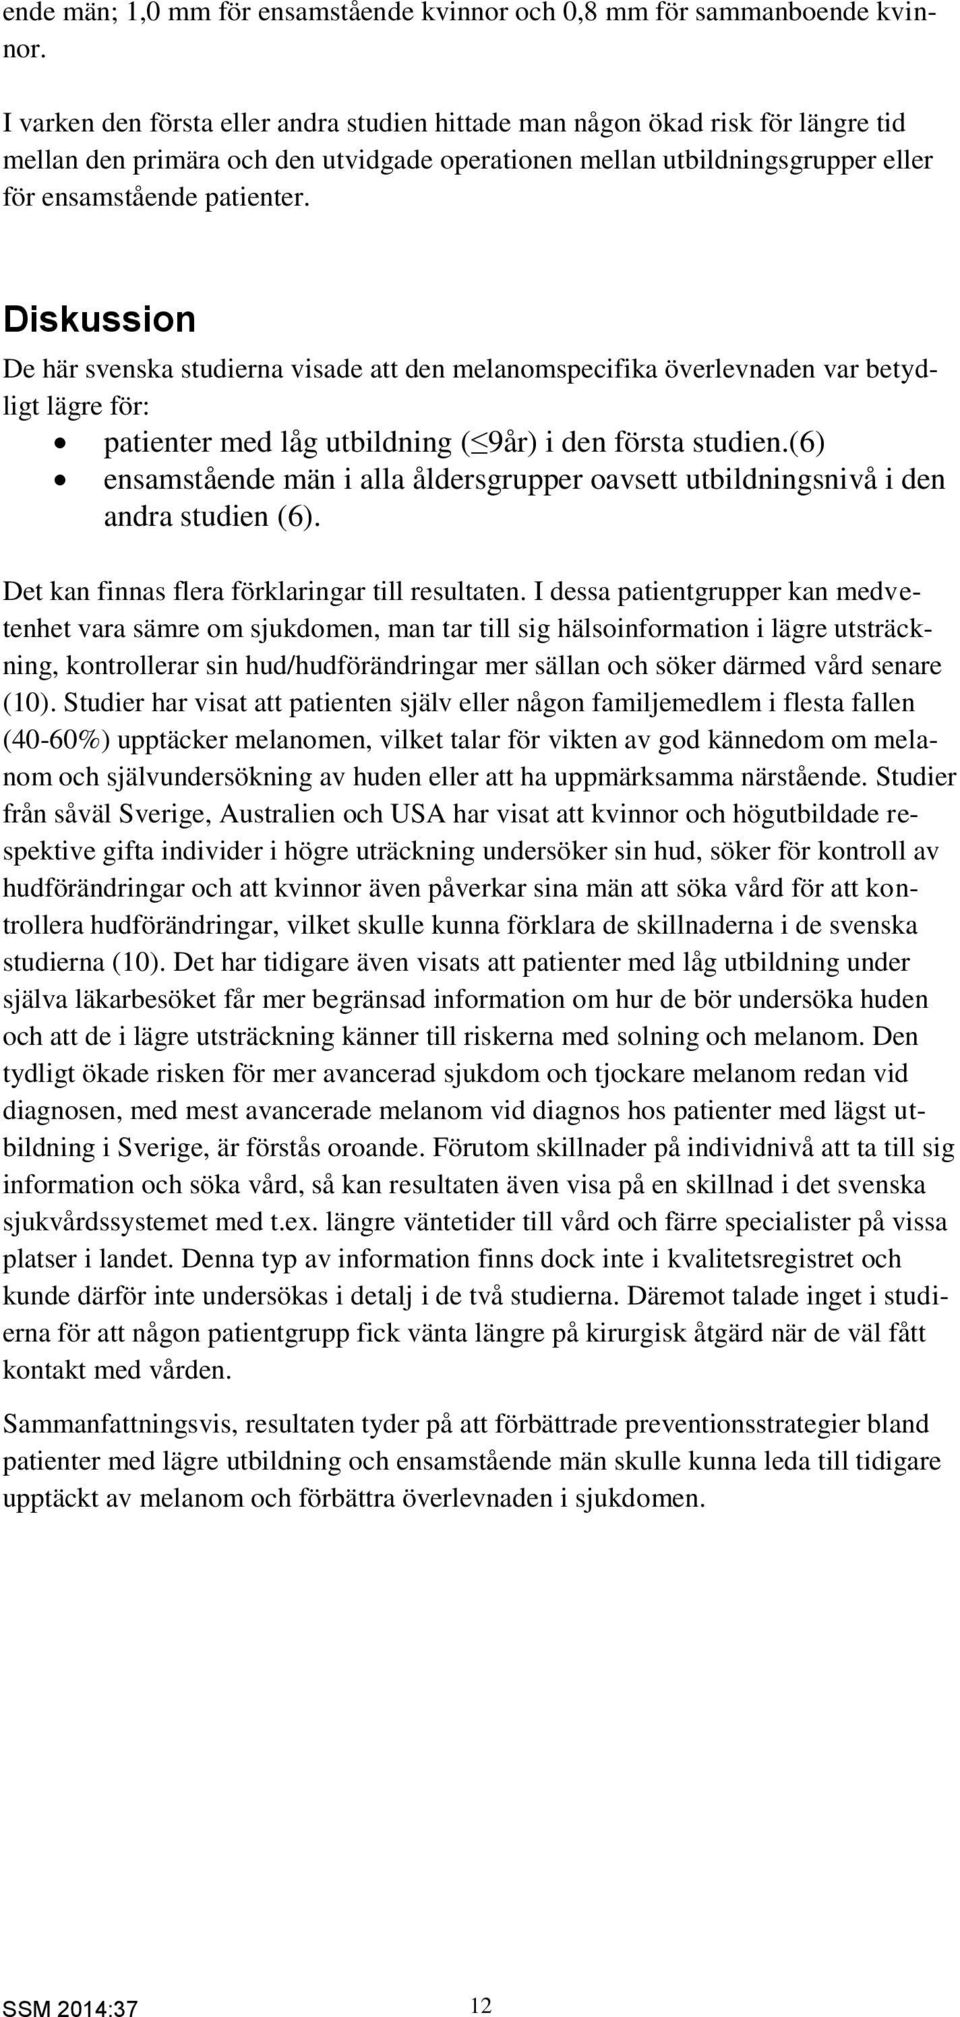 Diskussion De här svenska studierna visade att den melanomspecifika överlevnaden var betydligt lägre för: patienter med låg utbildning ( 9år) i den första studien.